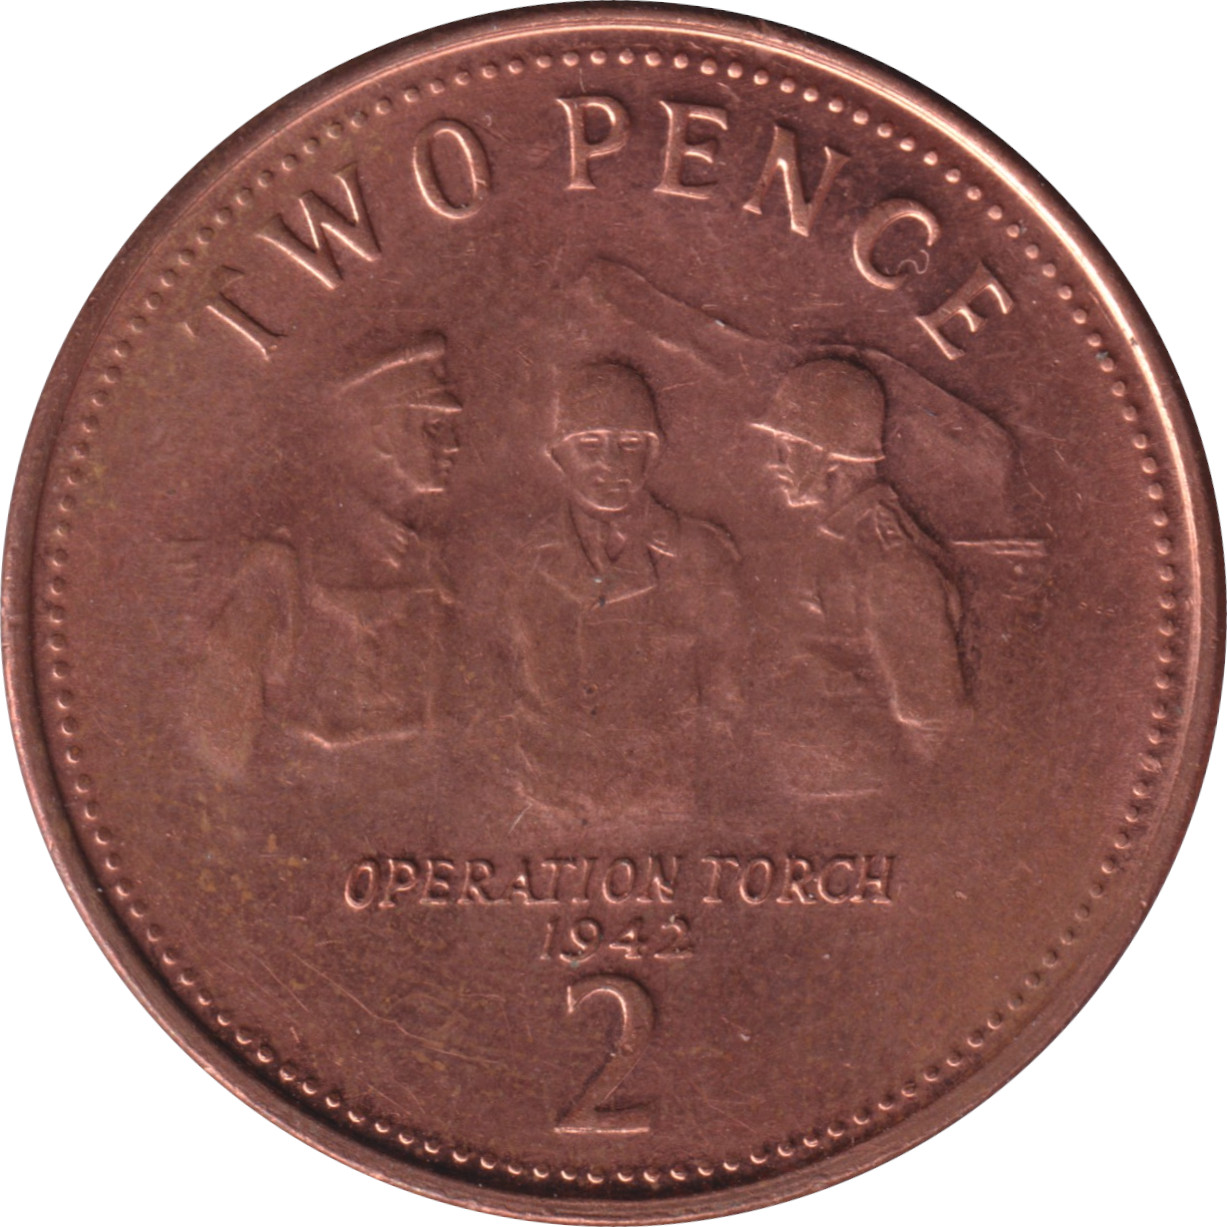 2 pence - Elizabeth II - Grand buste agé